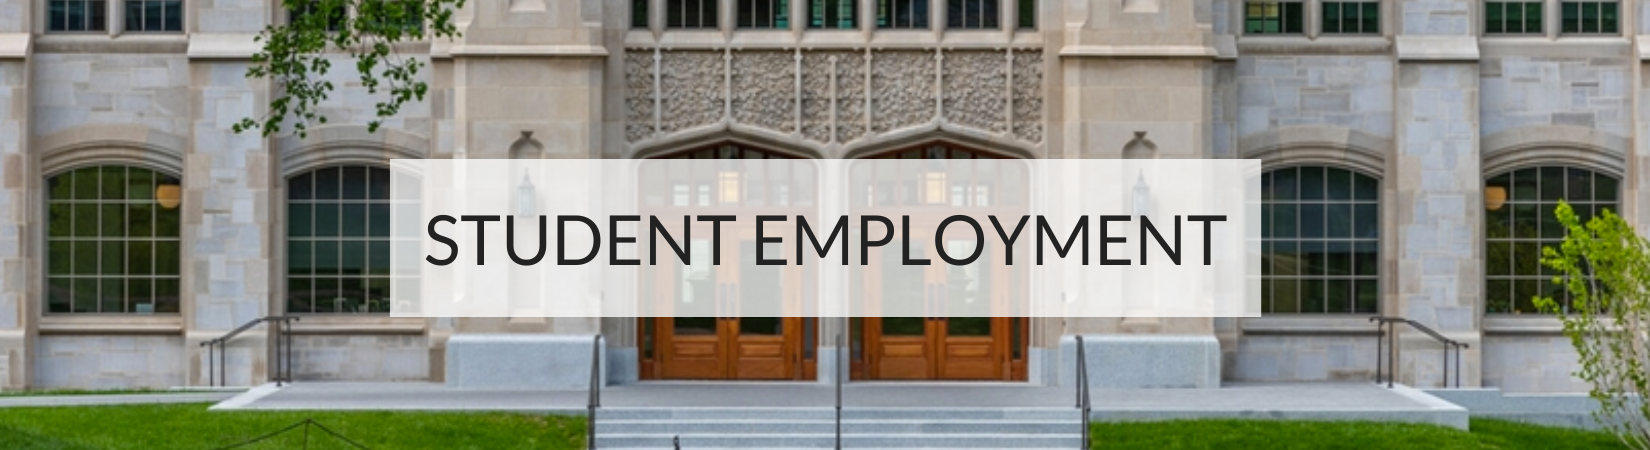 Student Employment Banner